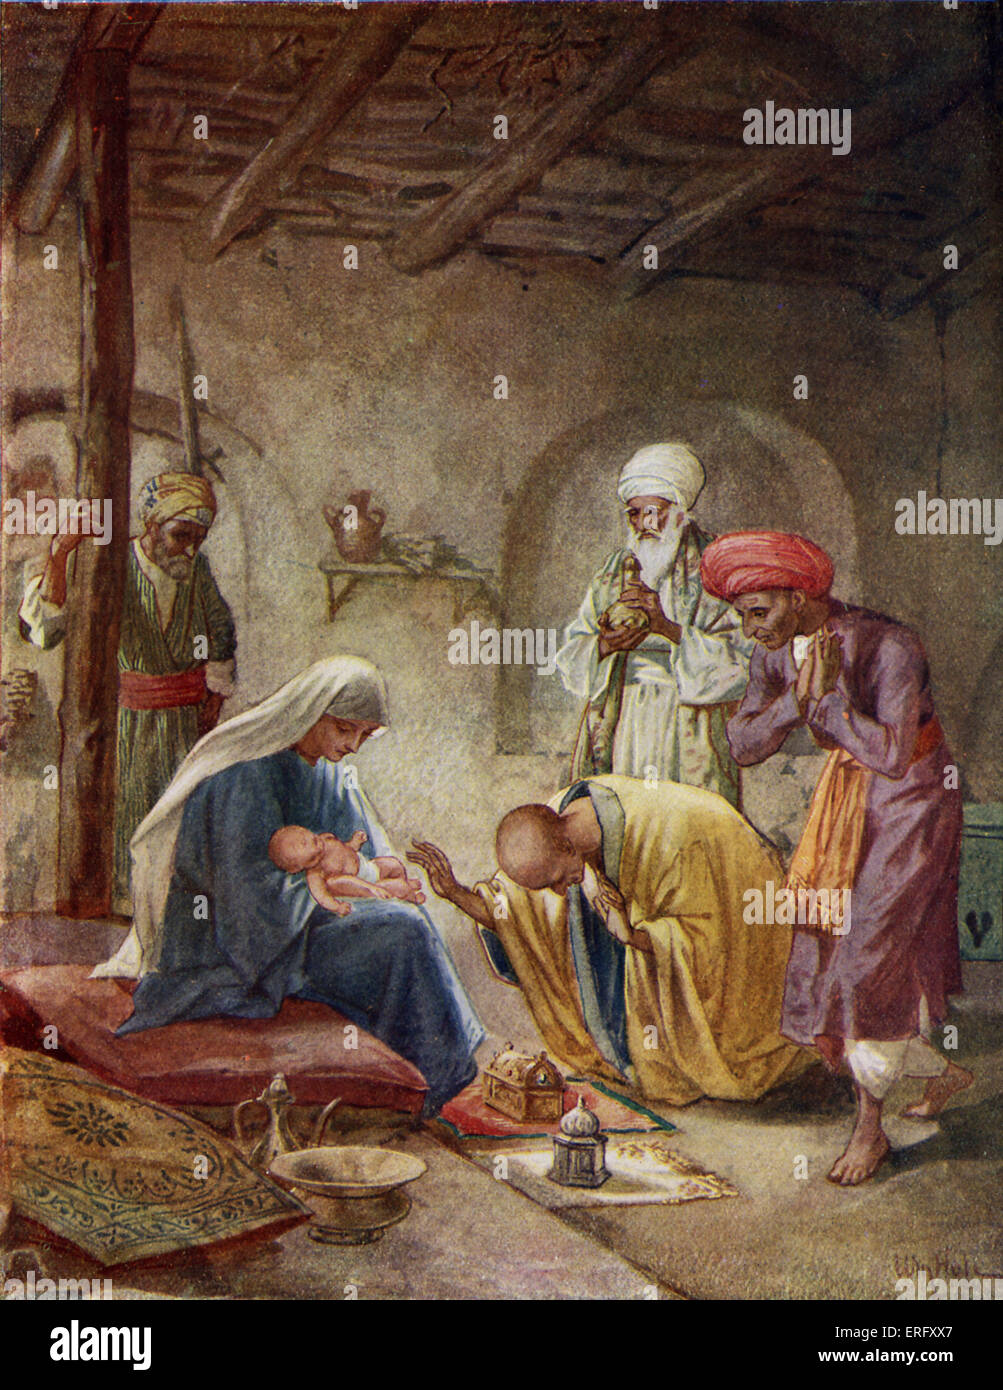 Die weisen Männer besuchen das Jesuskind "und sie kam ins Haus und sahen das Kind und Maria, seine Mutter; und sie fiel nieder und beteten ihn an; und öffnen ihre Schätze boten zu ihm Frakincense, Geschenke, Gold und Myrrhe ". Matthew II, 9-11 Stockfoto